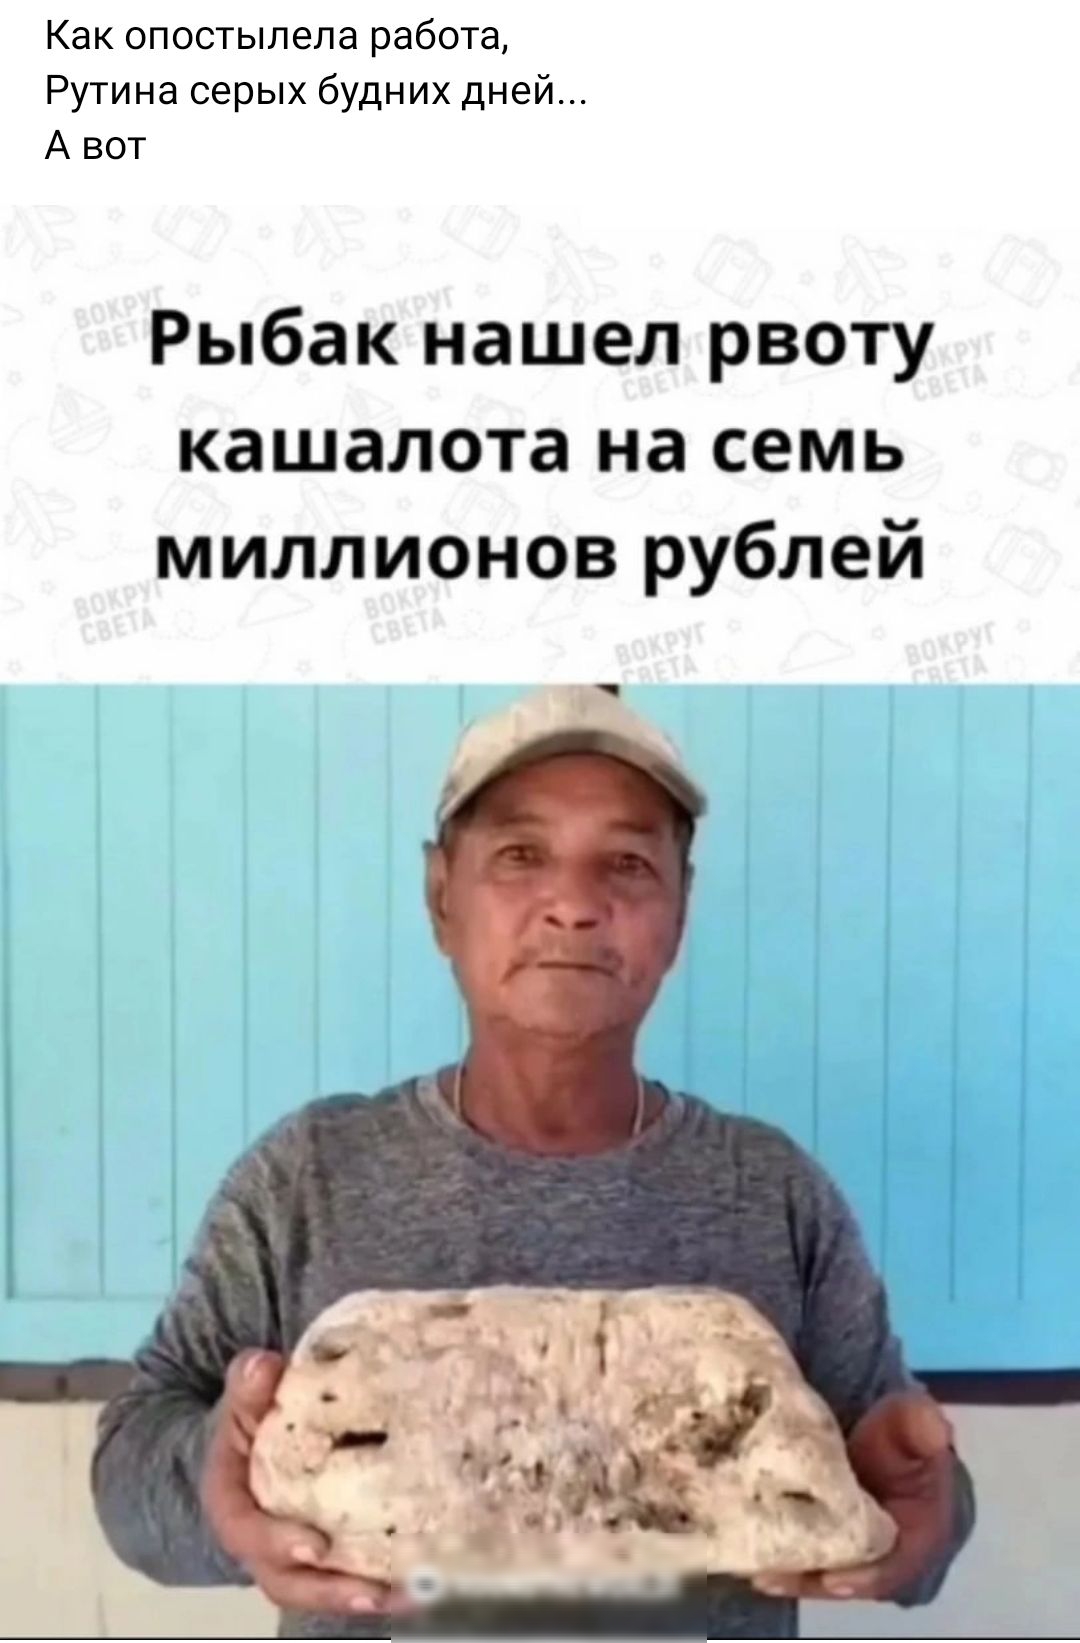 Как опостыпепа рабоТа Рутииа серых будних дней А вот Рыбак нашел рвоту кашалота на семь миллионов рублей